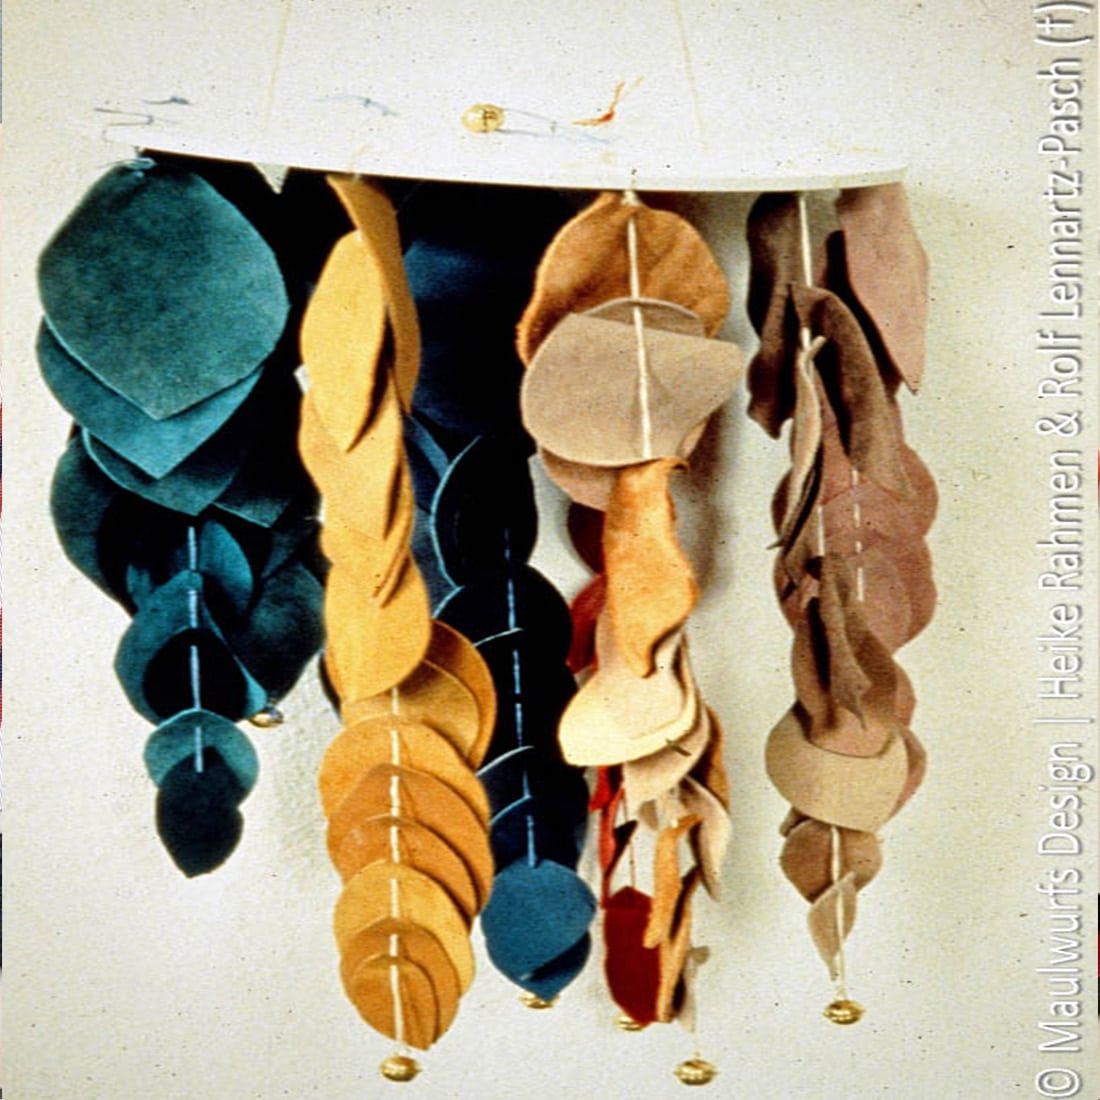 Verschiedene Lederblätter in unterschiedlichen Farben hängen als Teil einer künstlerischen Ausstellung an einer Wand.